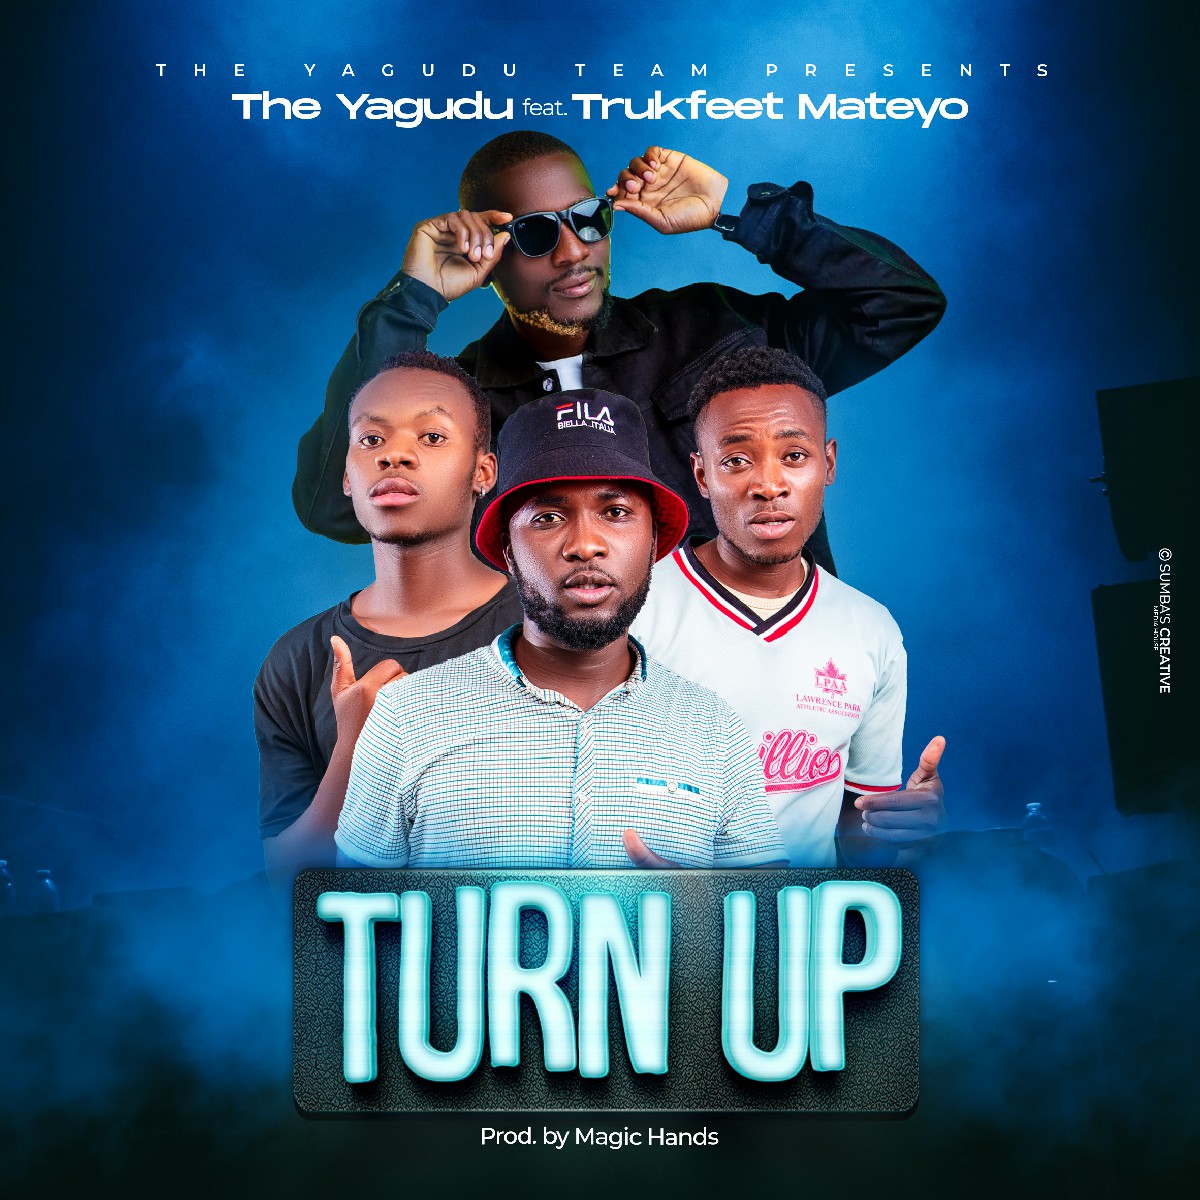 The Yagudu ft. Trukfeet Mateyo - Turn Up